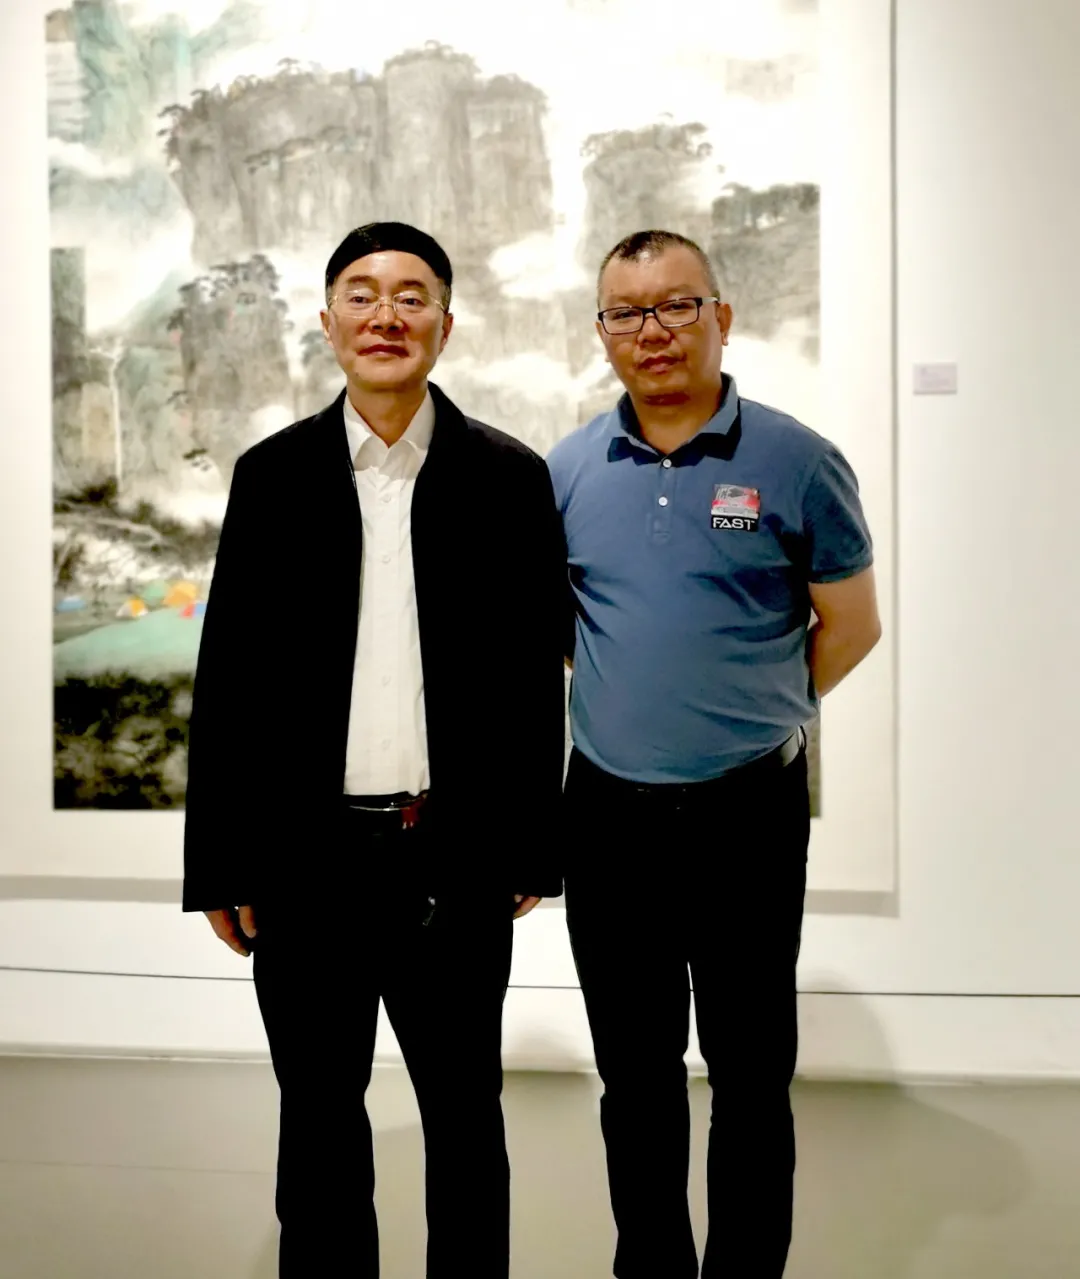 画家未君作品亮相湖南统一战线庆祝中国共产党成立100周年书画展